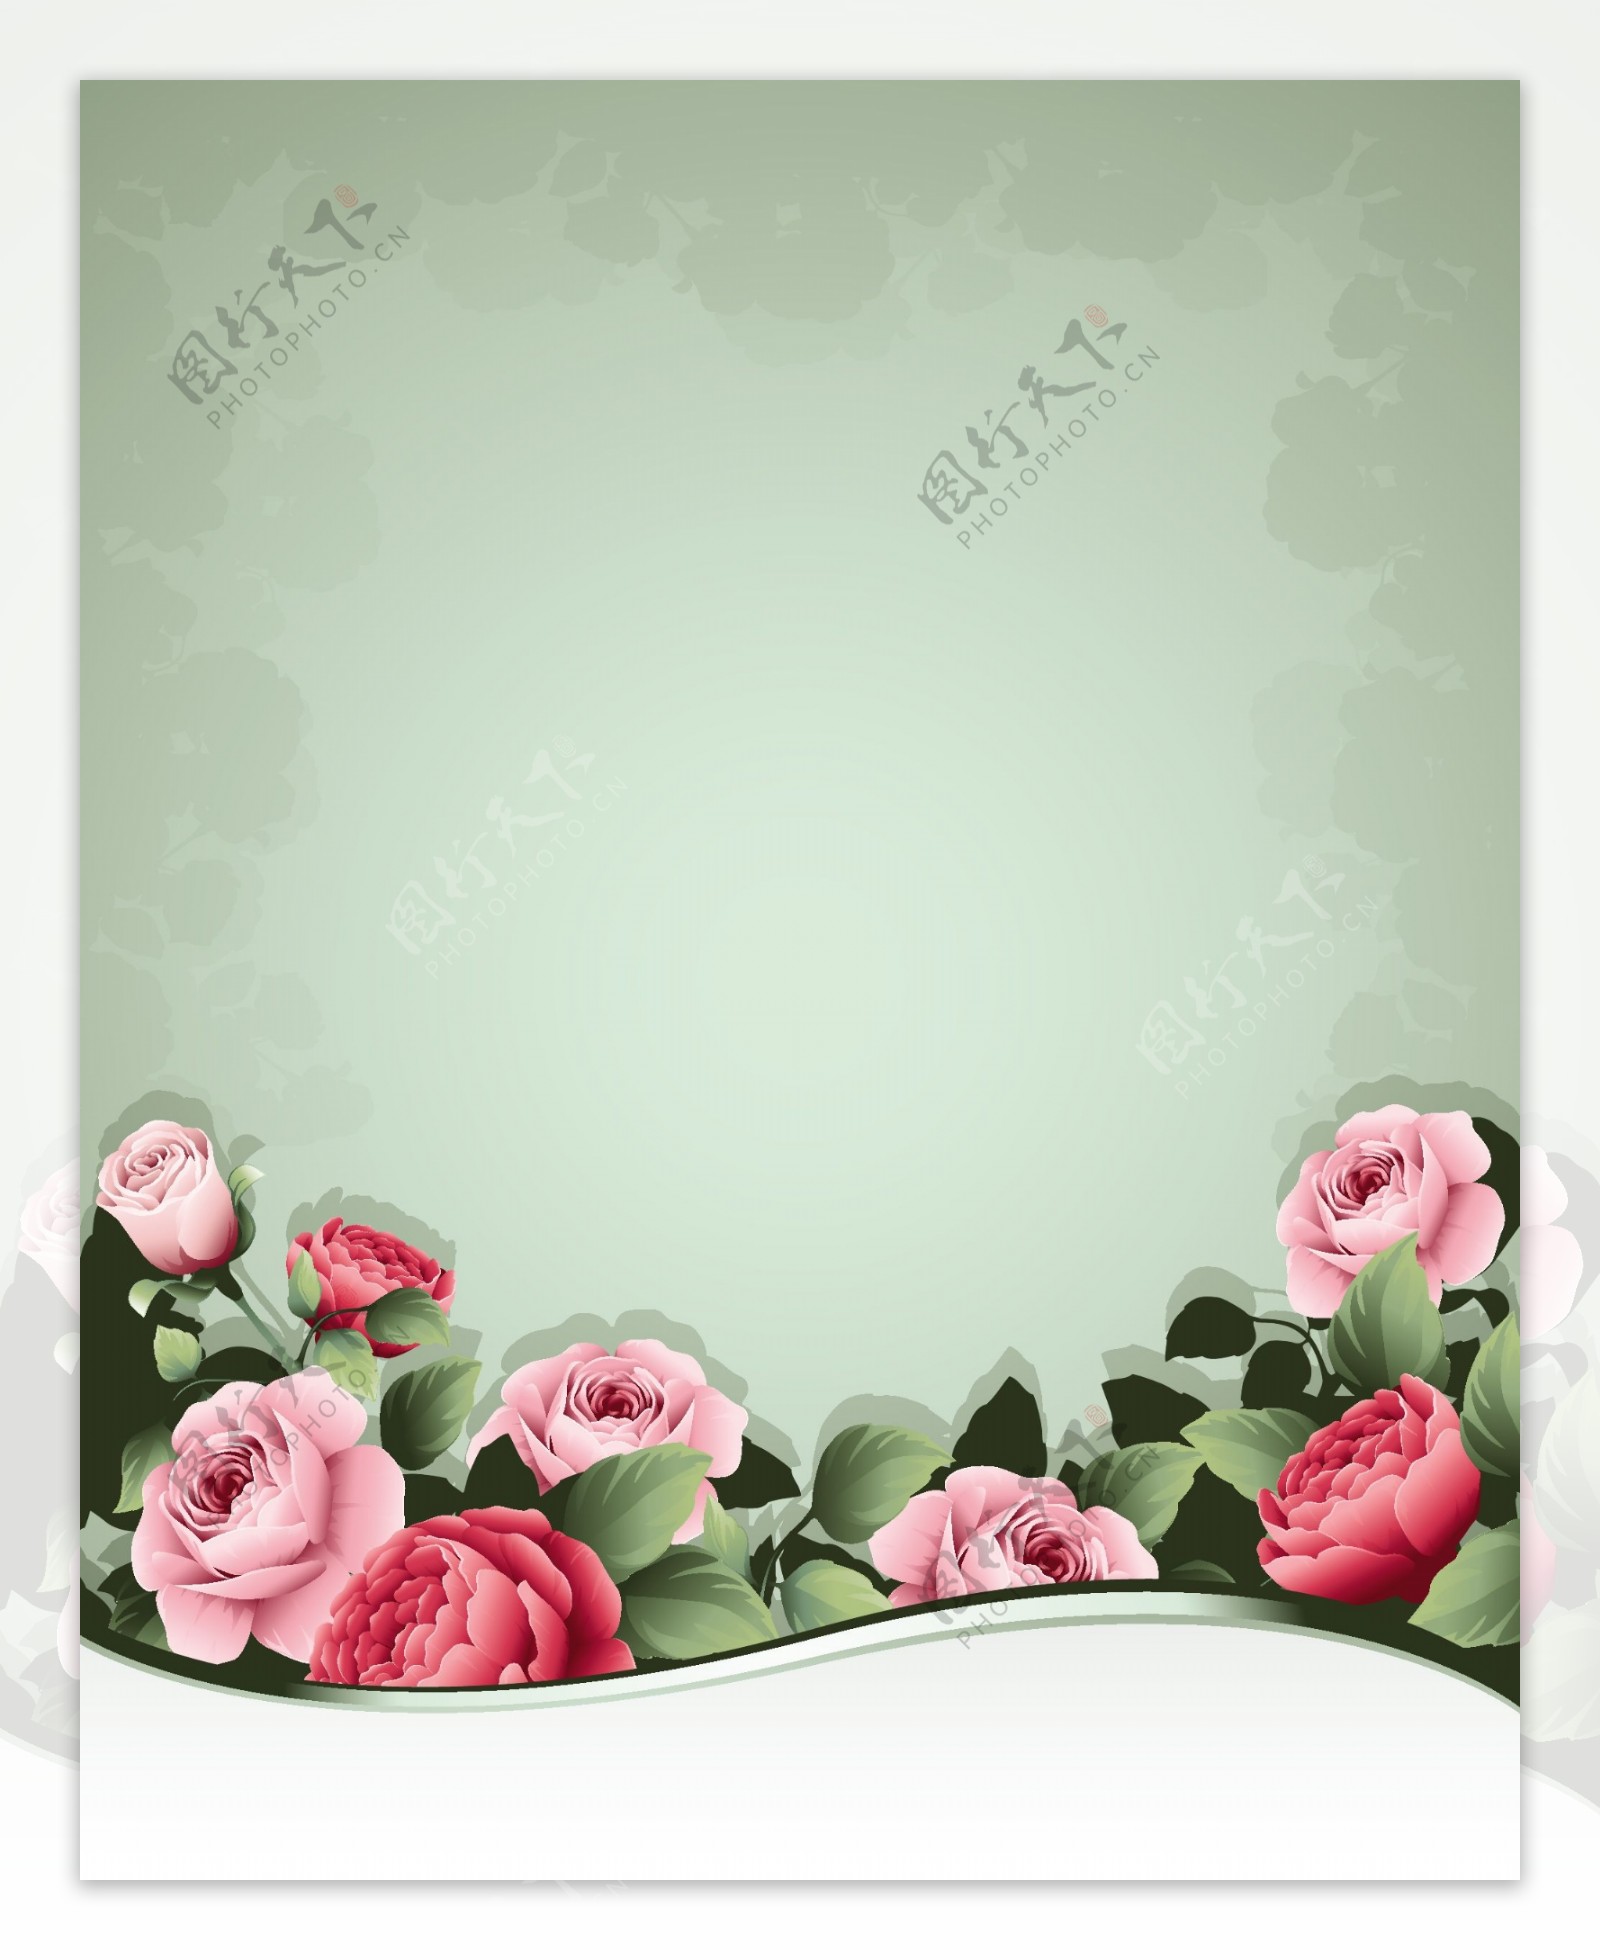 卡通玫瑰花朵矢量素材背景